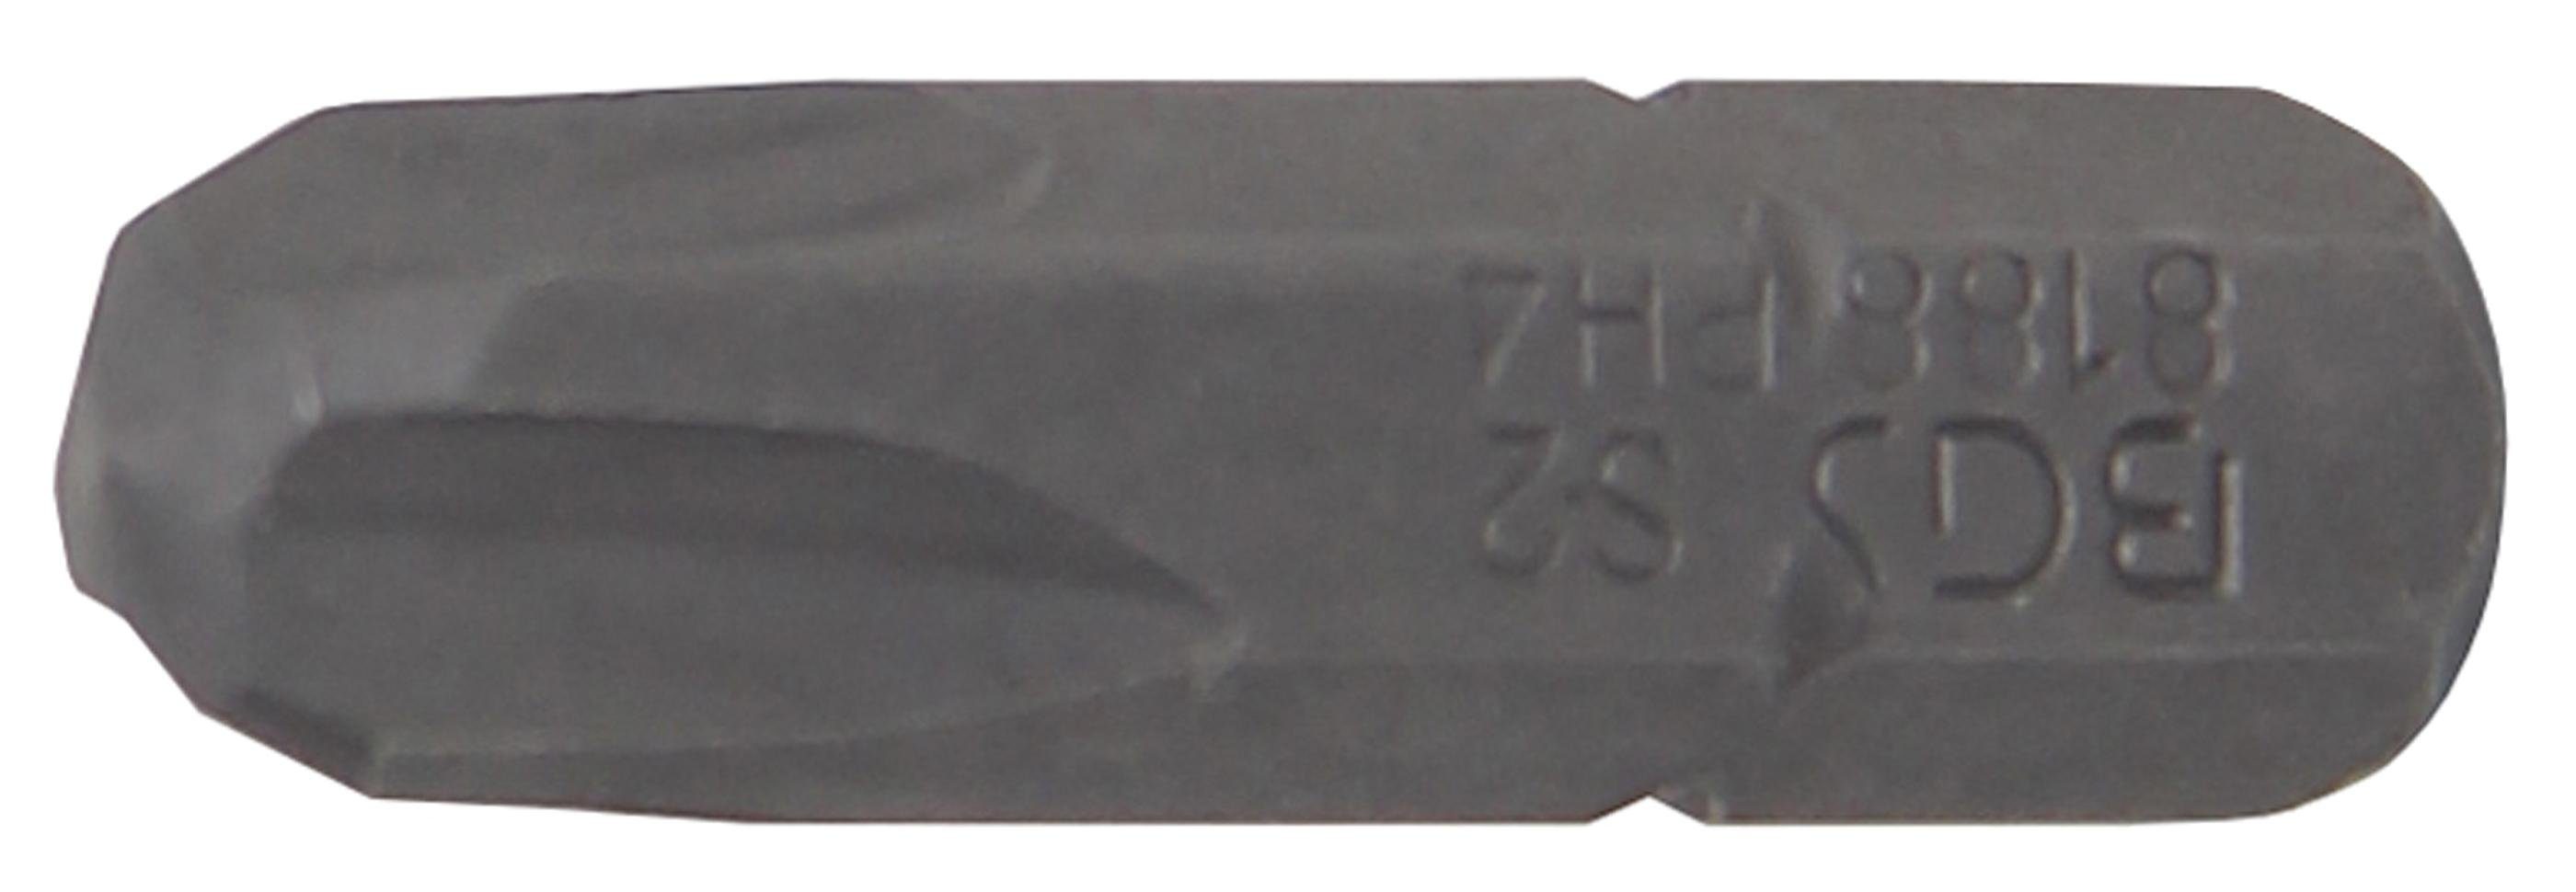 PH4 BGS 6,3 (1/4), Antrieb Außensechskant Bit-Schraubendreher mm Bit, technic Kreuzschlitz